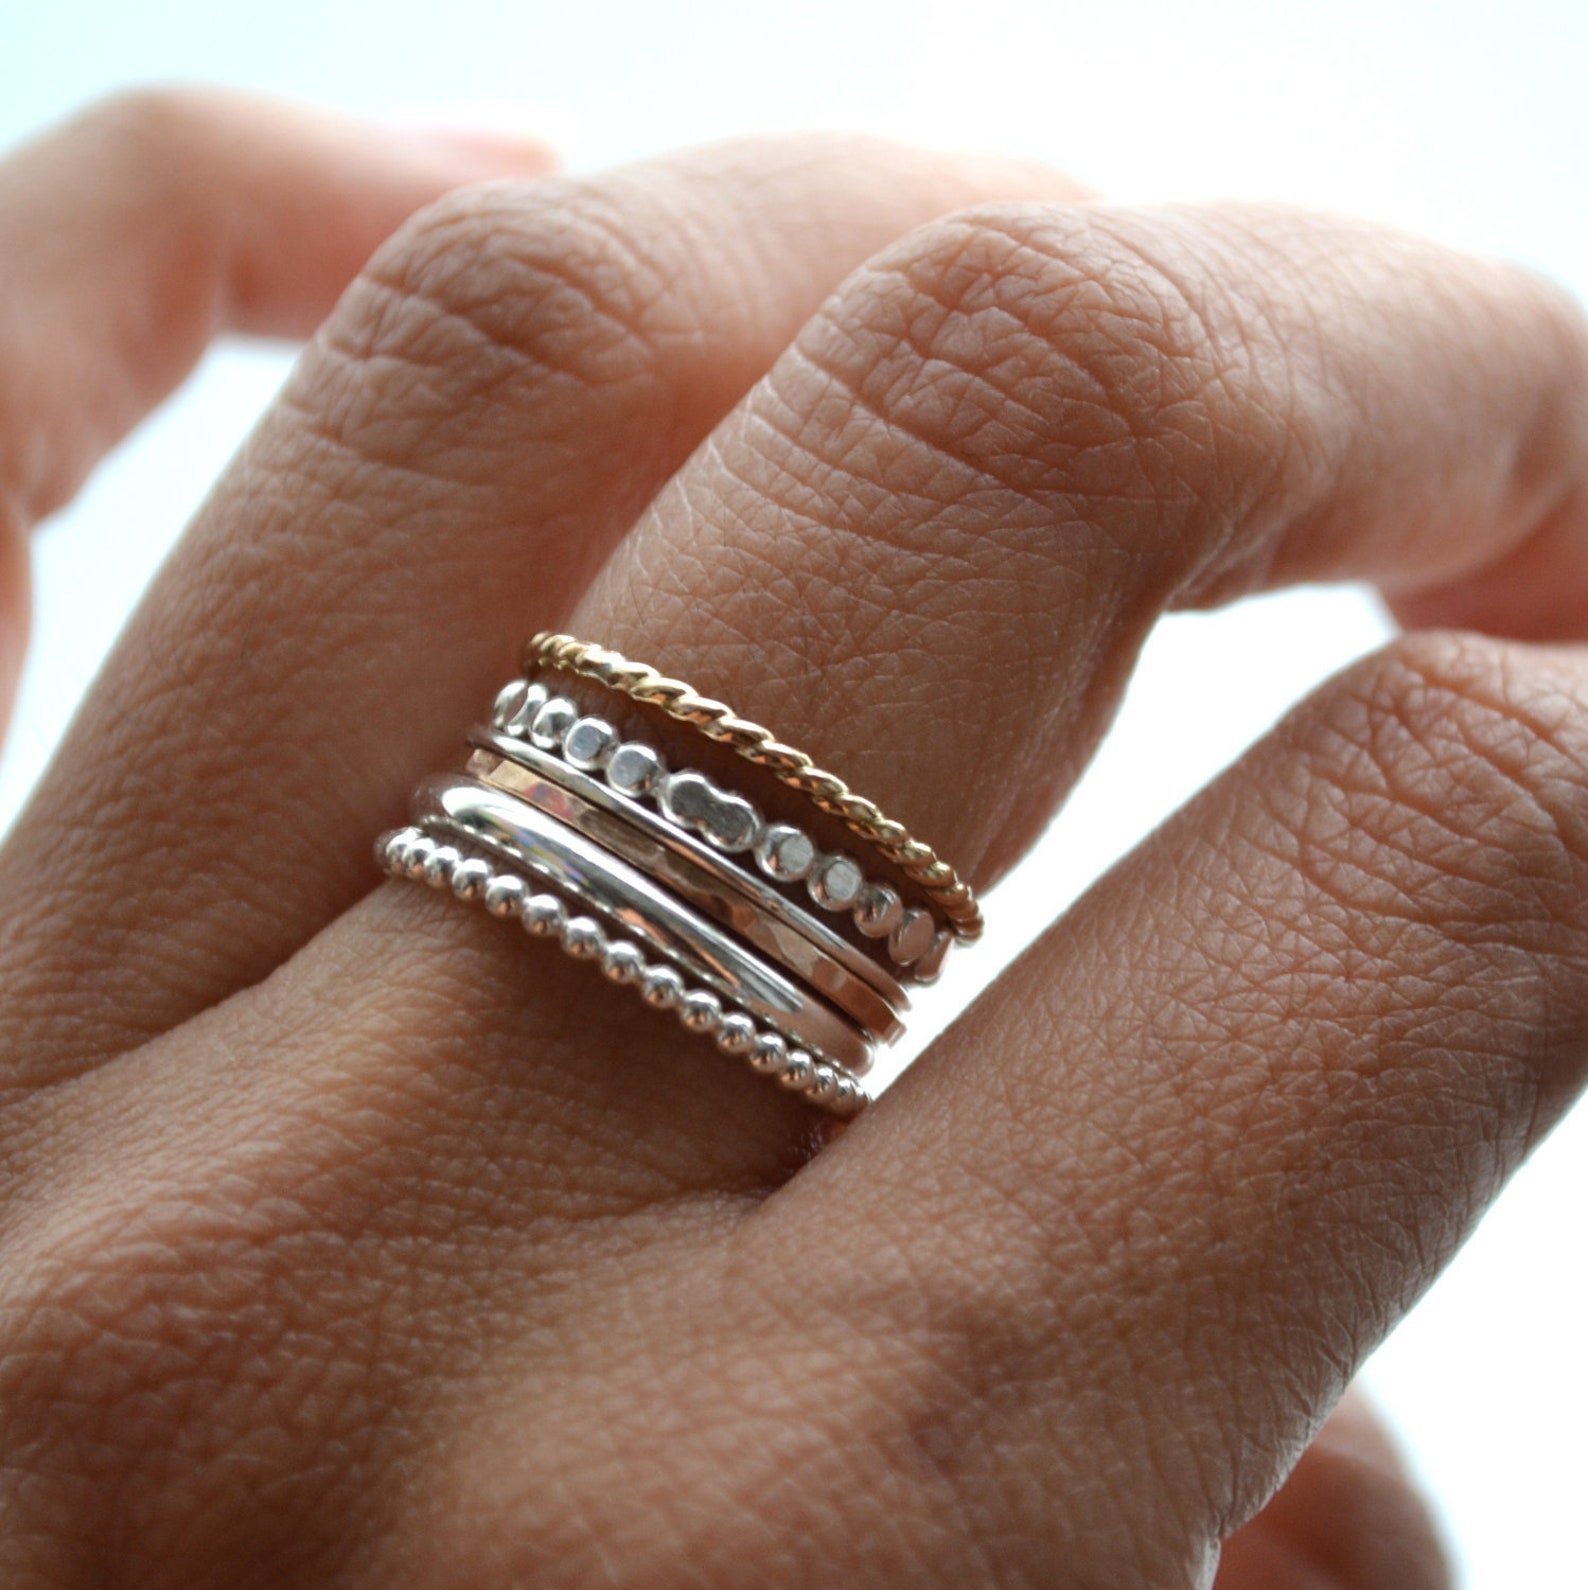 Сочетание золота и серебра кольца. Многослойное кольцо. Золотое и серебряное кольцо вместе. Золотые и серебряные кольца на одной руке.